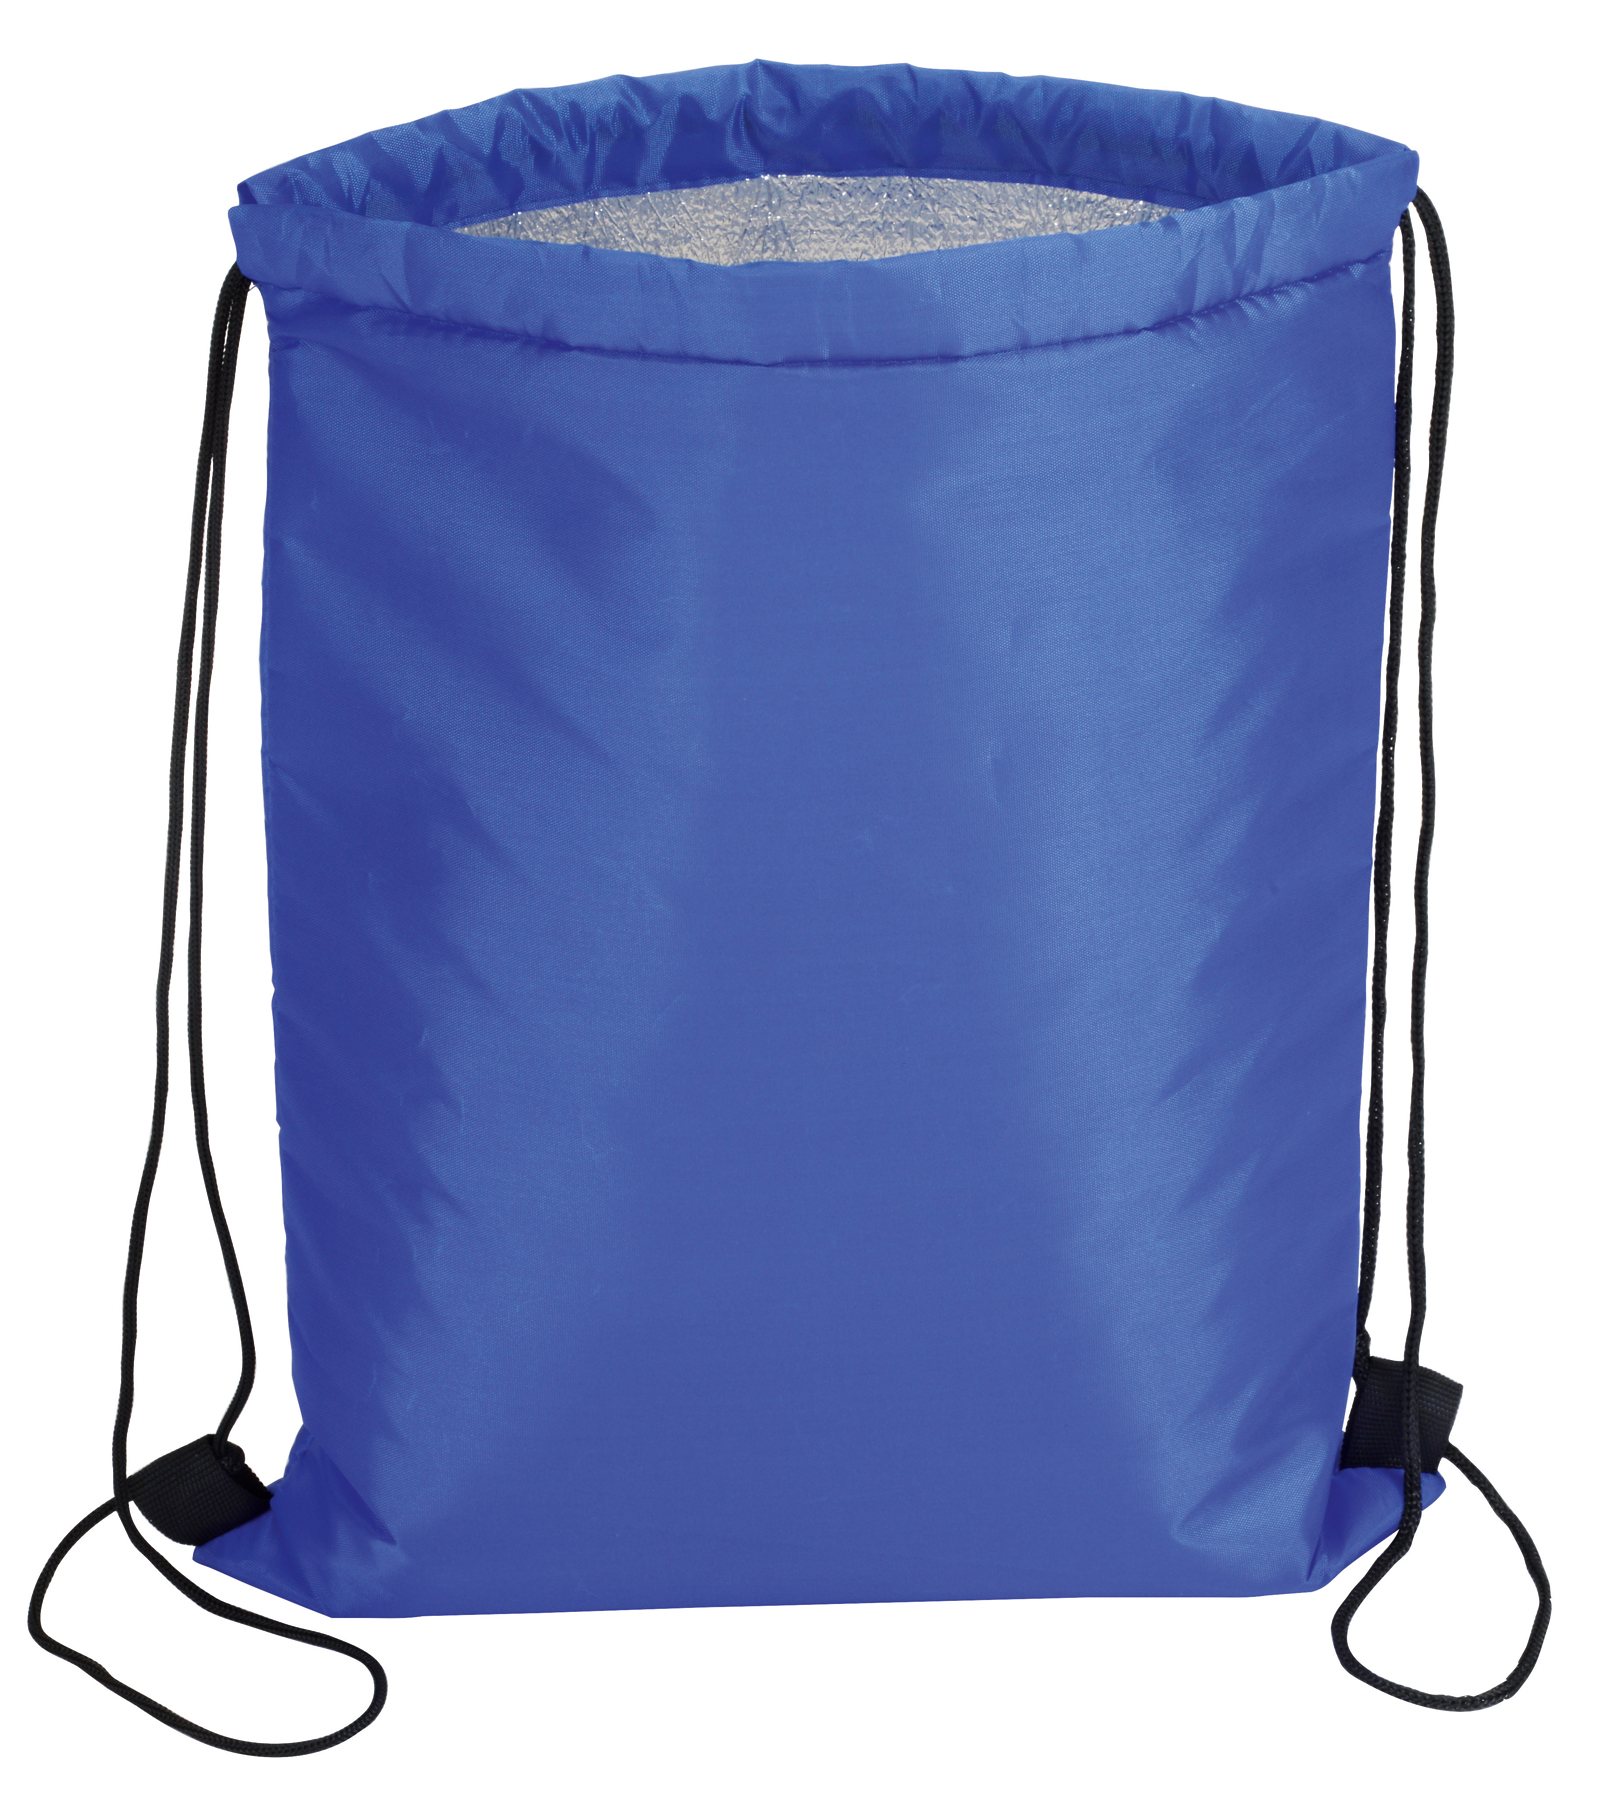 Plecak chłodzący ISO COOL, niebieski